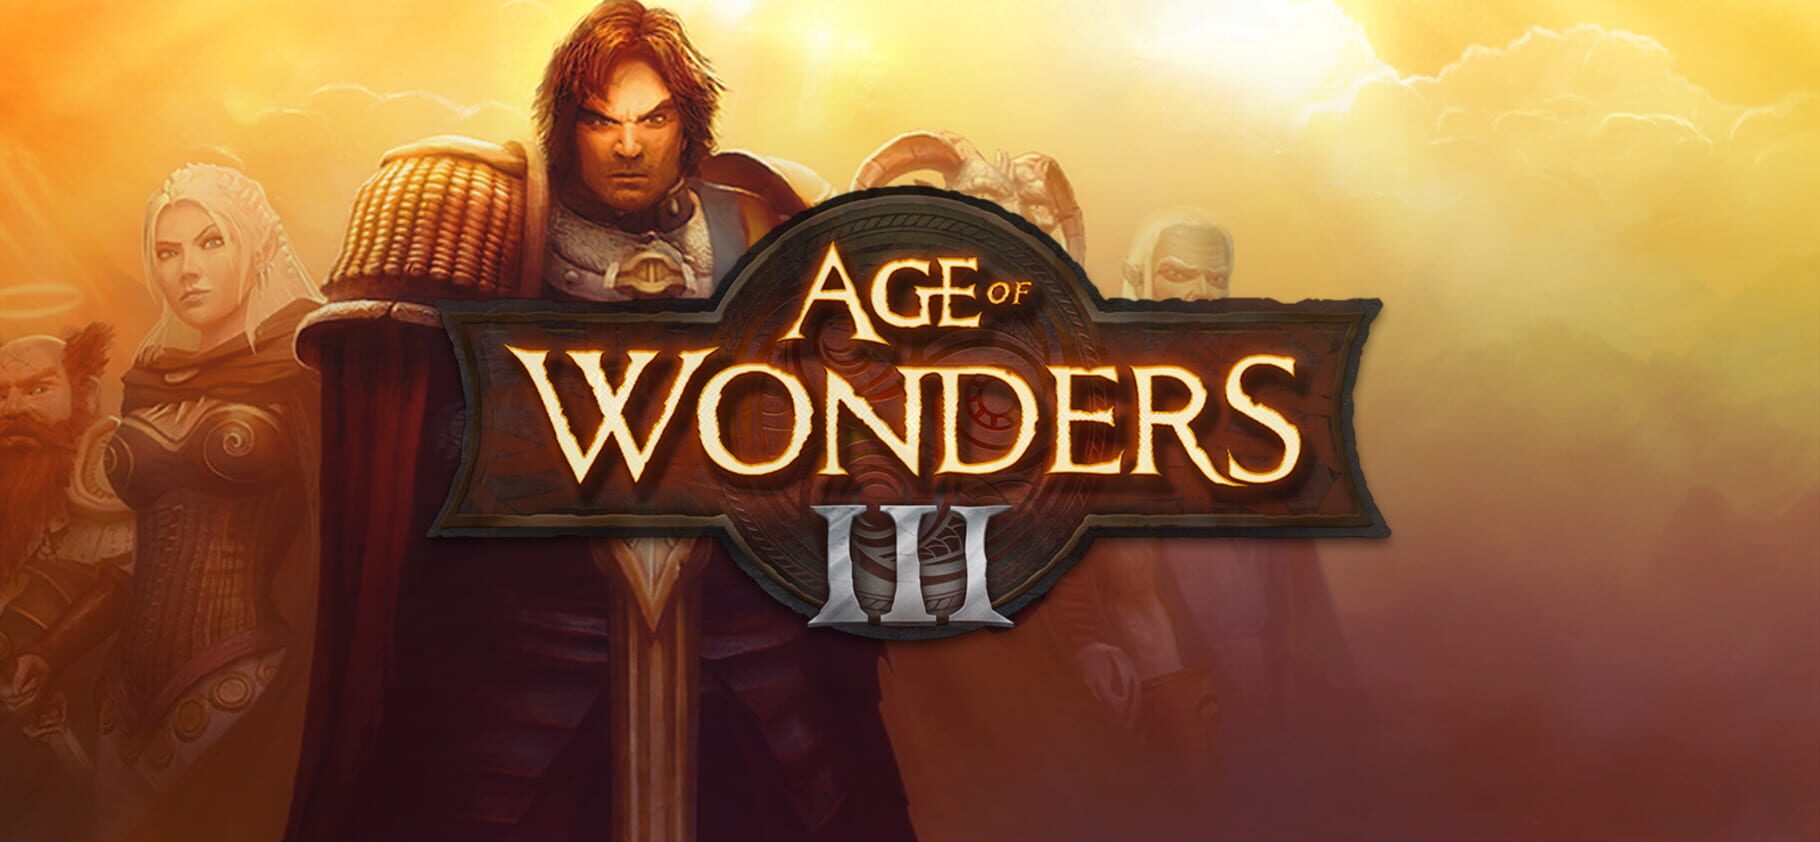 Age of Wonders III Image